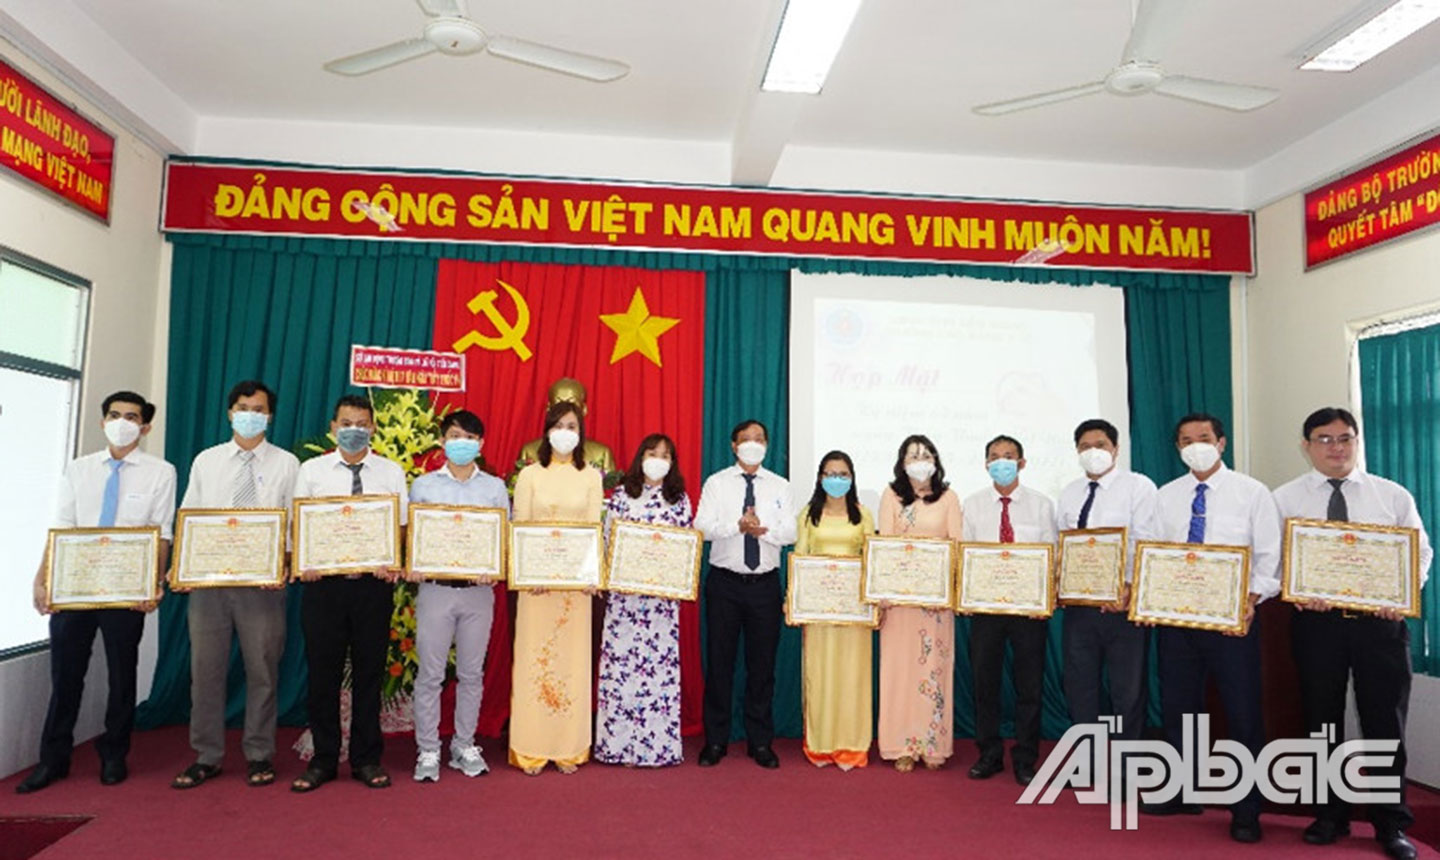 Chị Ngọc (thứ 5 từ trái sang) nhận Bằng khen của UBND tỉnh Tiền Giang đạt thành tích trong công tác từ năm học 2019 - 2020 đến năm học  2020 - 2021.              Ảnh: Đỗ Ngọc